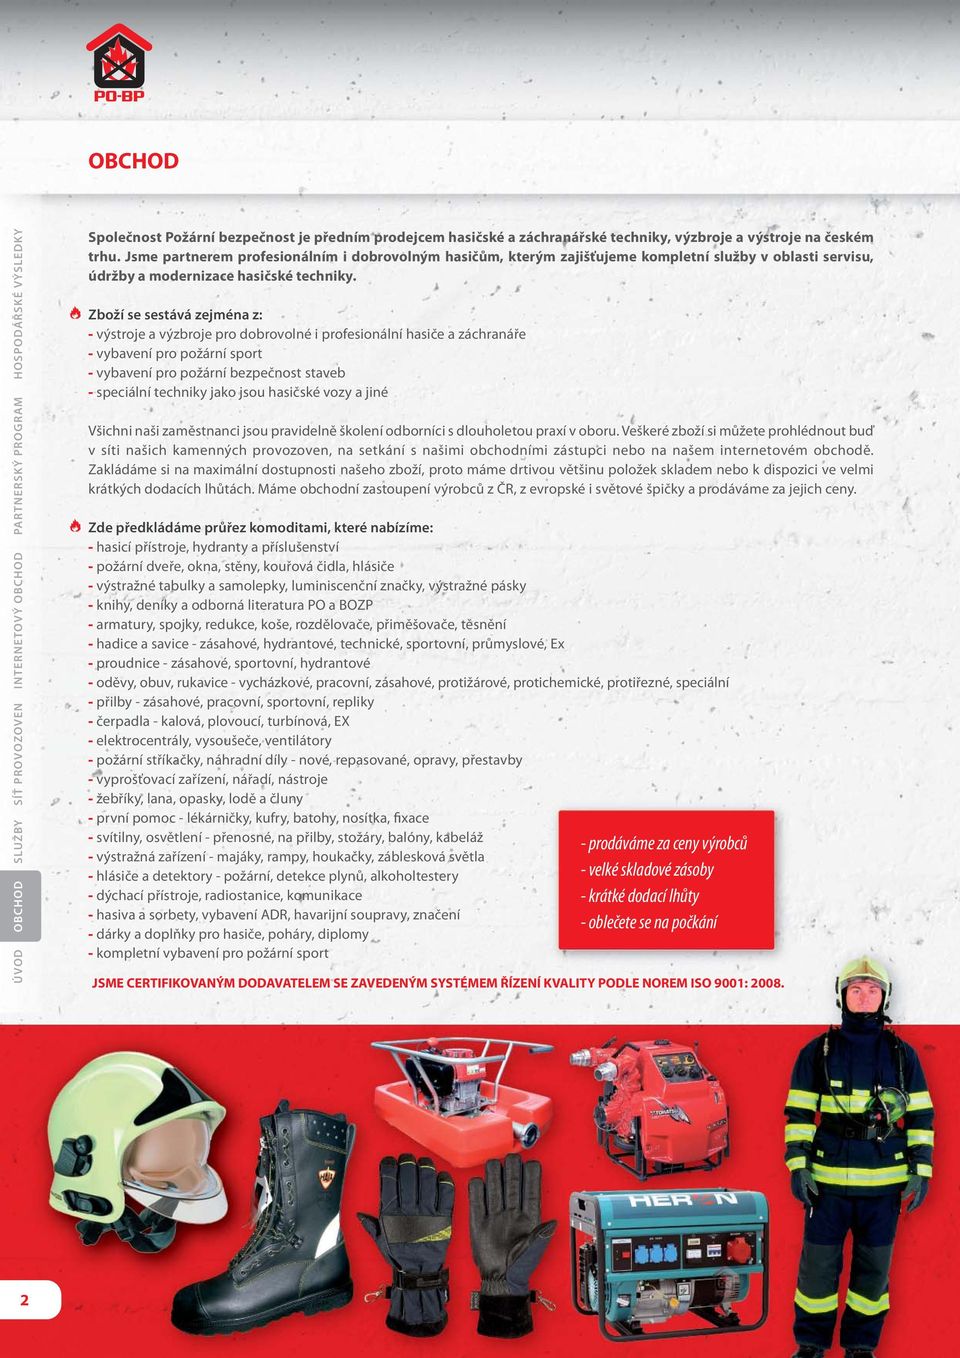 Zboží se sestává zejména z: - výstroje a výzbroje pro dobrovolné i profesionální hasiče a záchranáře - vybavení pro požární sport - vybavení pro požární bezpečnost staveb - speciální techniky jako